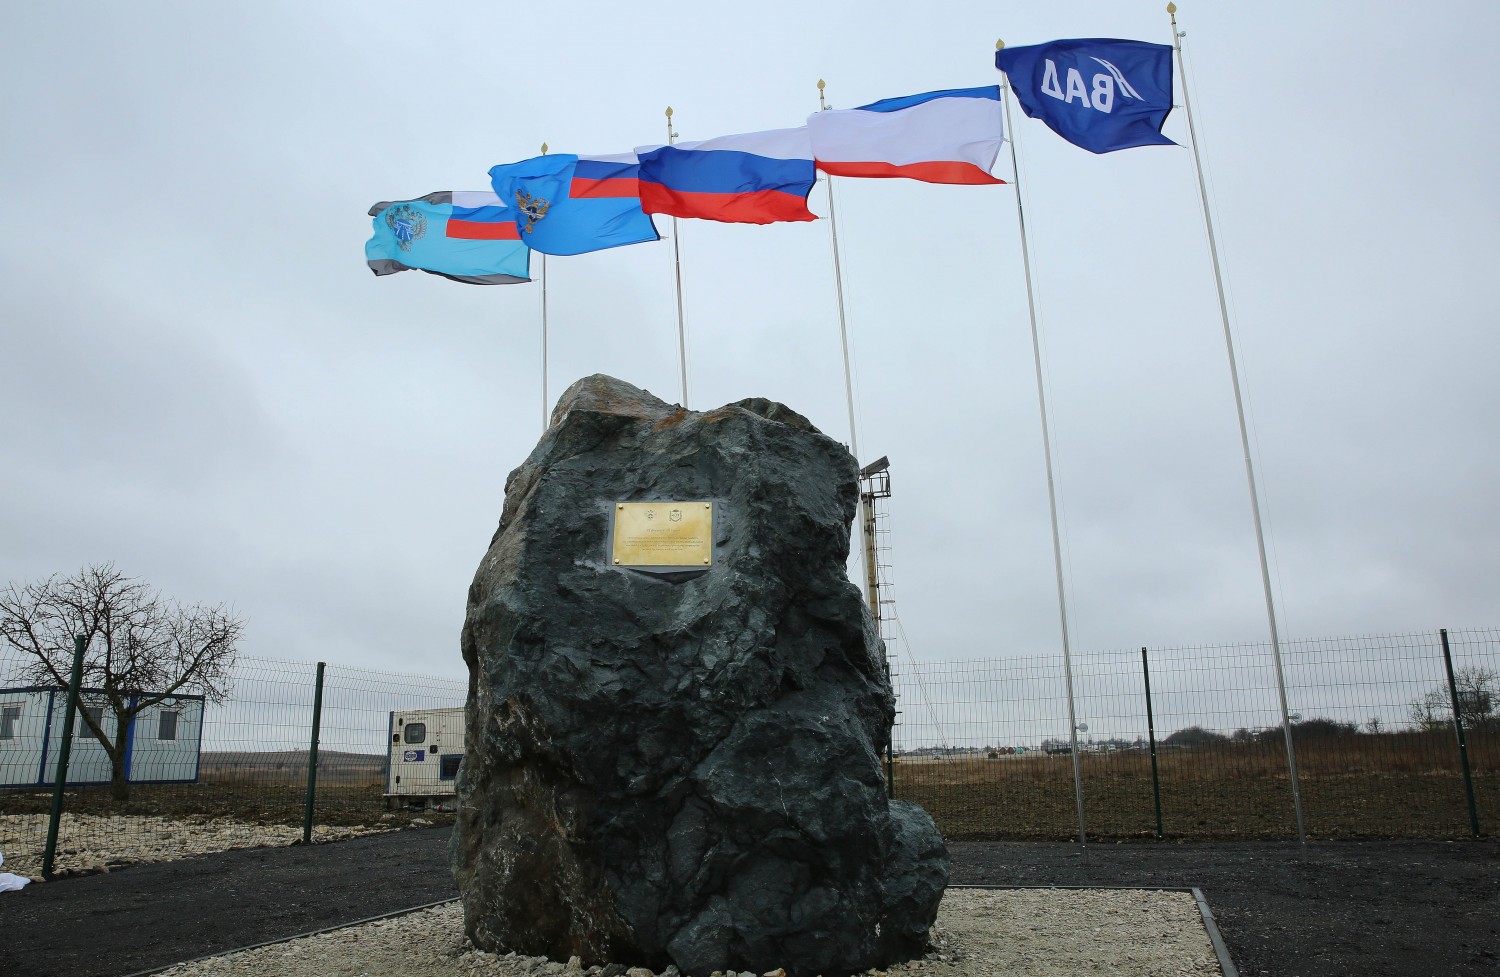 РВИО объявило конкурс на создание проекта памятника в честь воссоединения Крыма с Россией